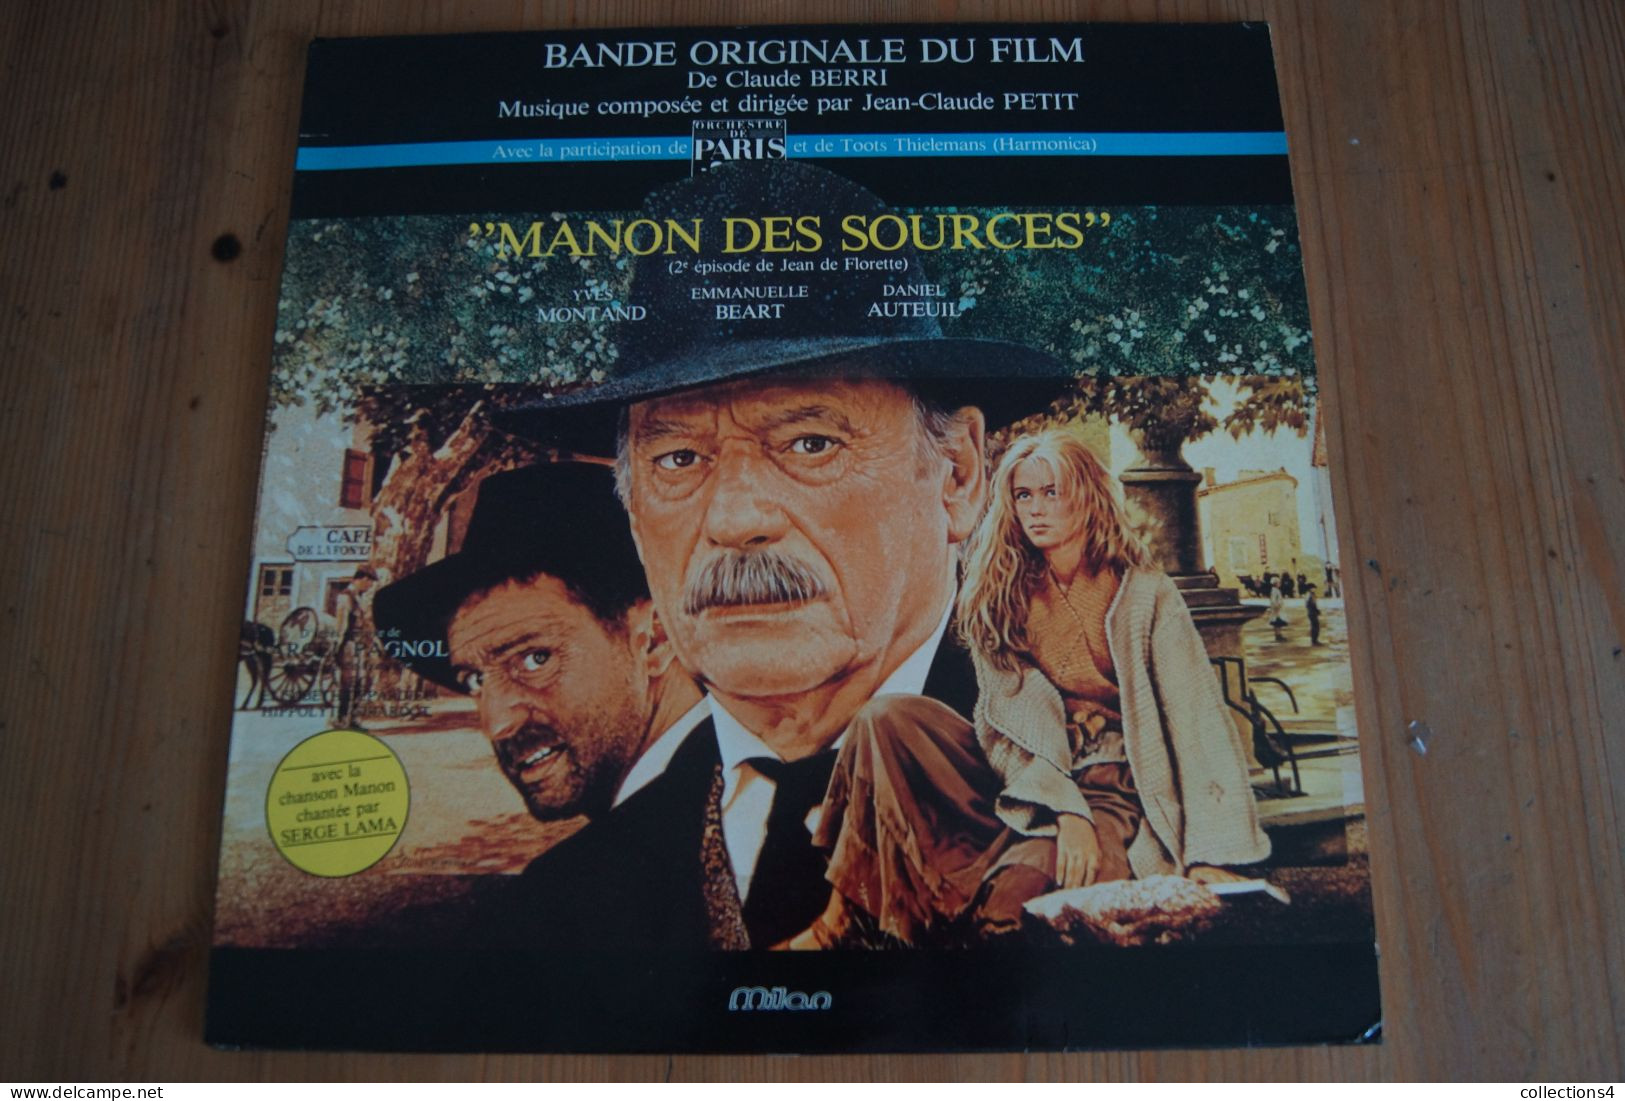 MANON DES SOURCES JEAN CLAUDE PETIT SERGE LAMA MARCEL PAGNOL EMMANUELLE BEART MONTAND DANIEL AUTEUIL LP DU FILM 1986 - Música De Peliculas